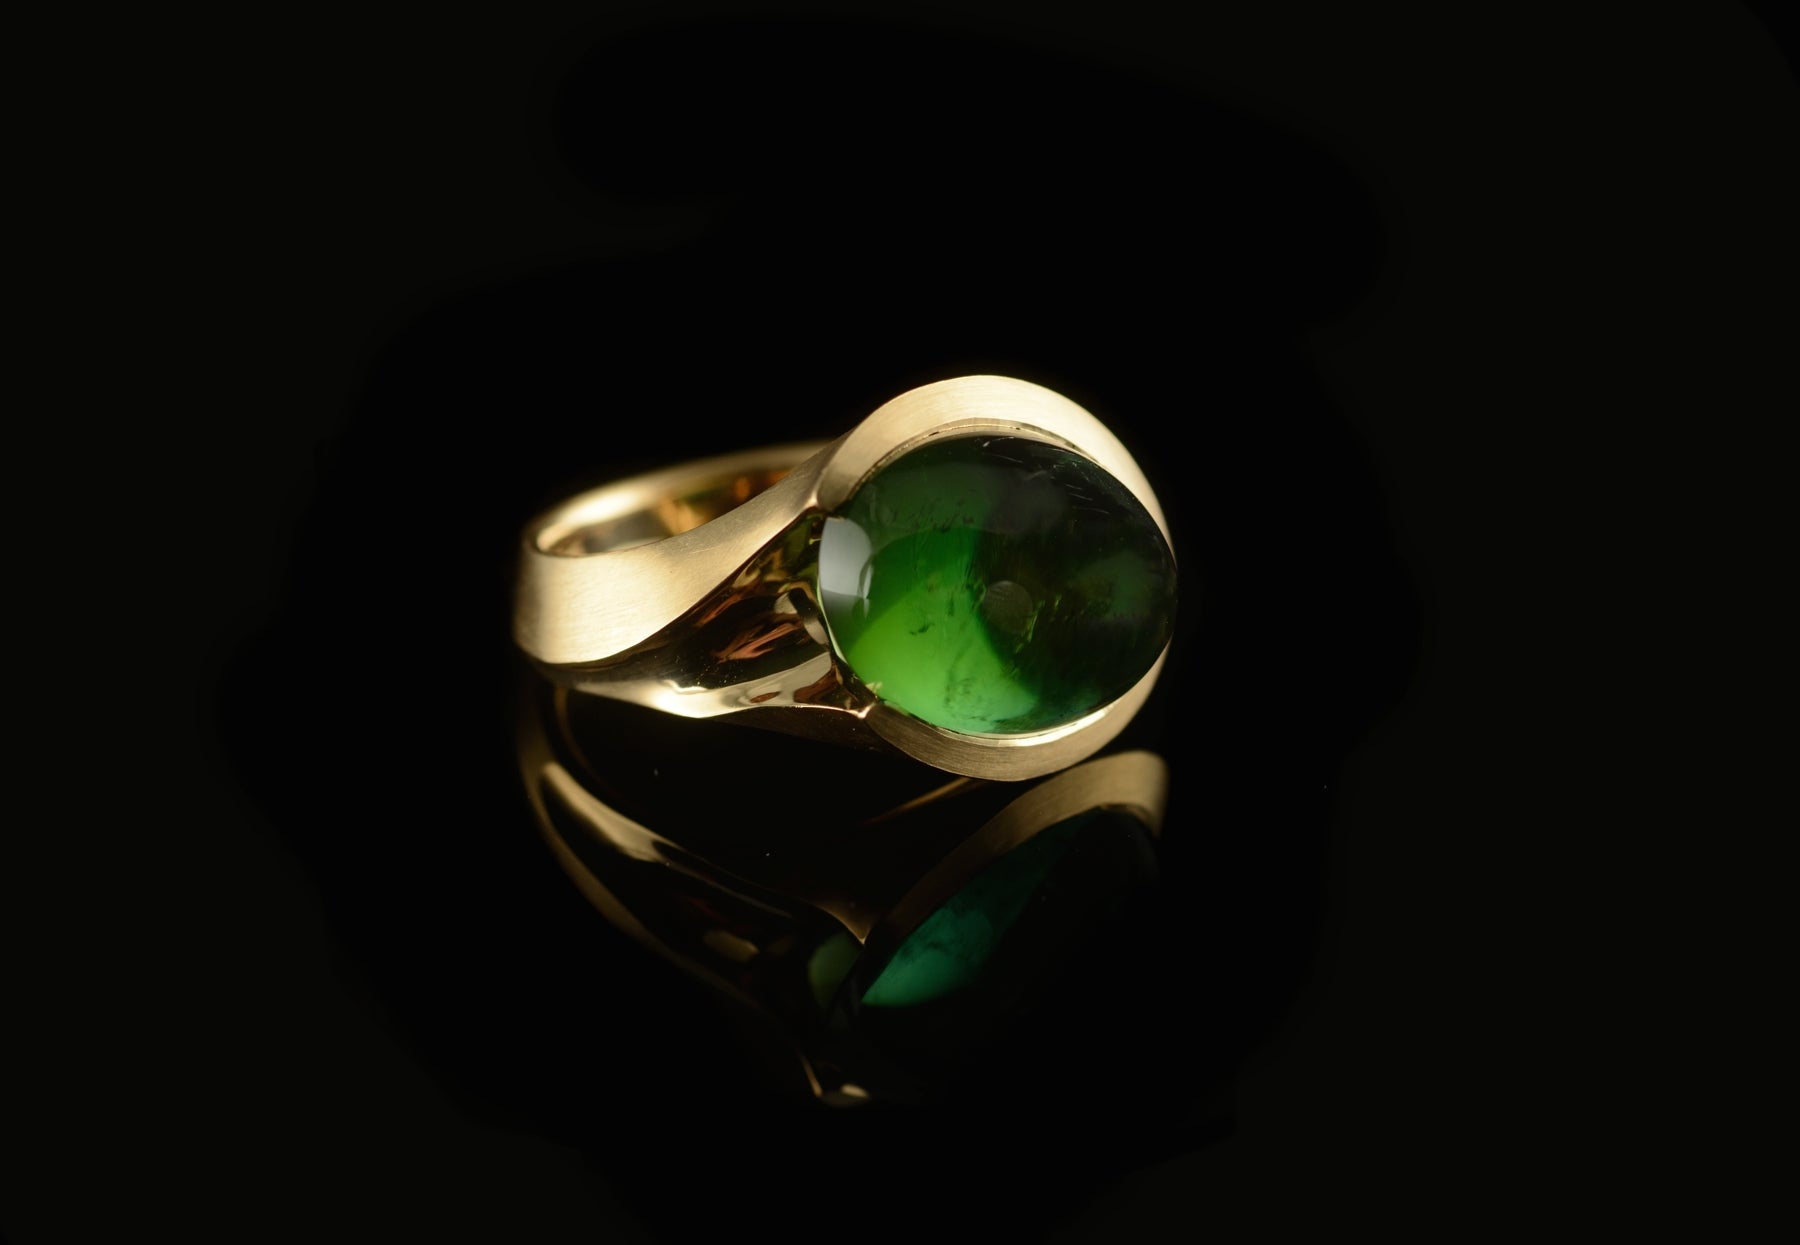 Arris green tourmaline rose gold ring